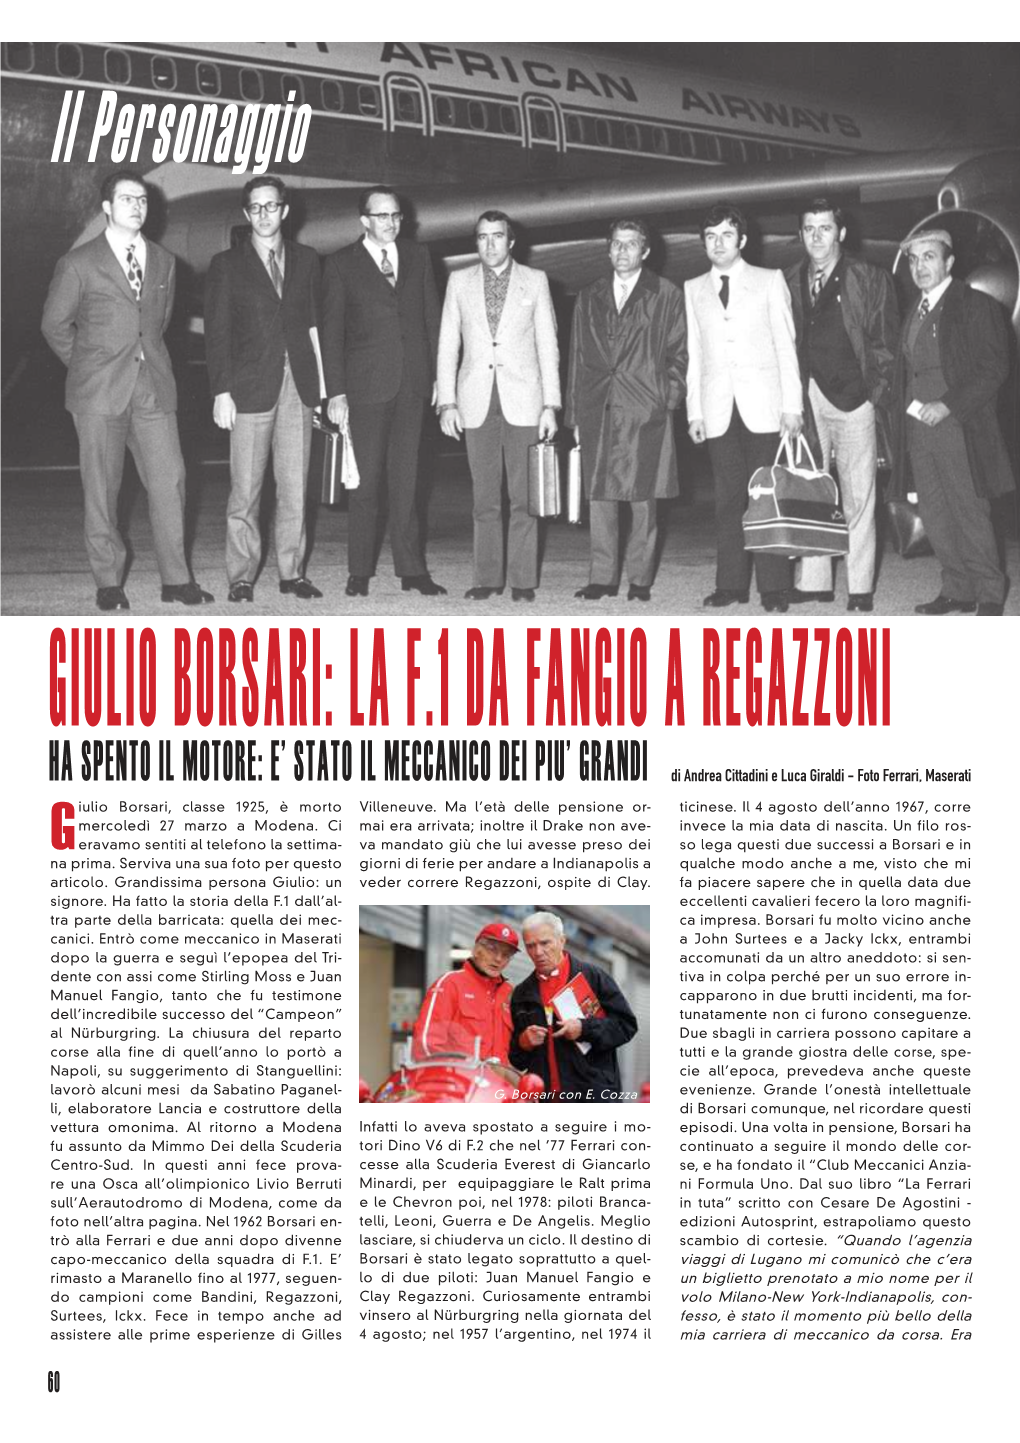 Giulio Borsari: La F.1 Da Fangio a Regazzoni